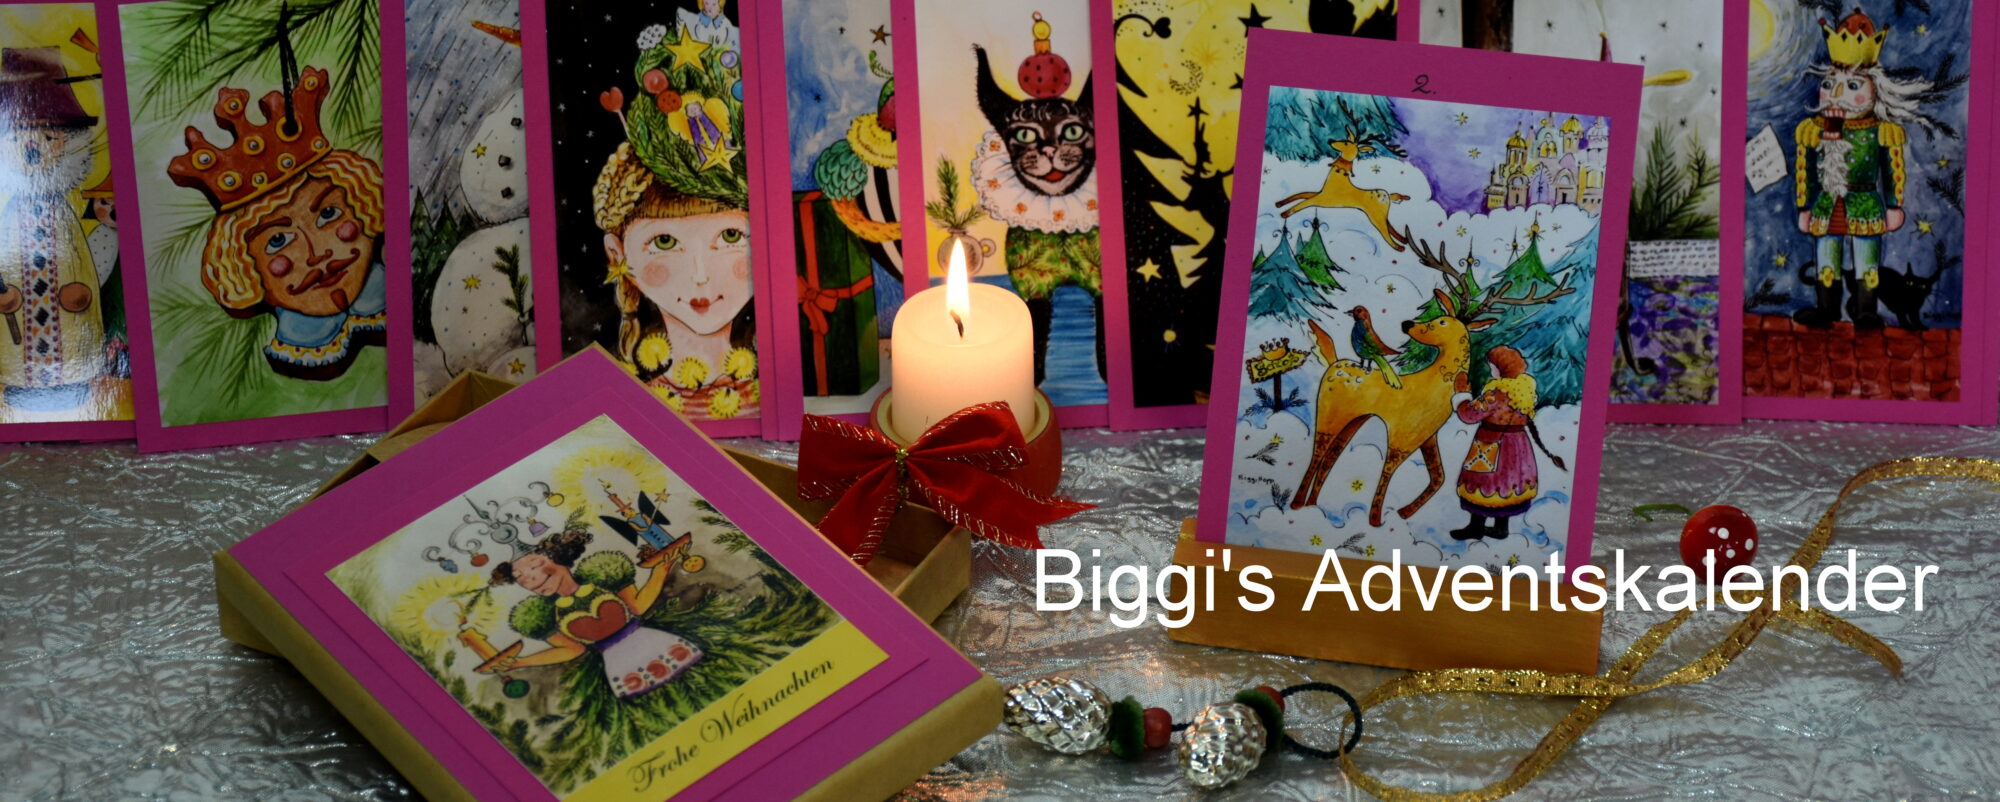 Biggi's Adventskalender mit Bilderfotokarten